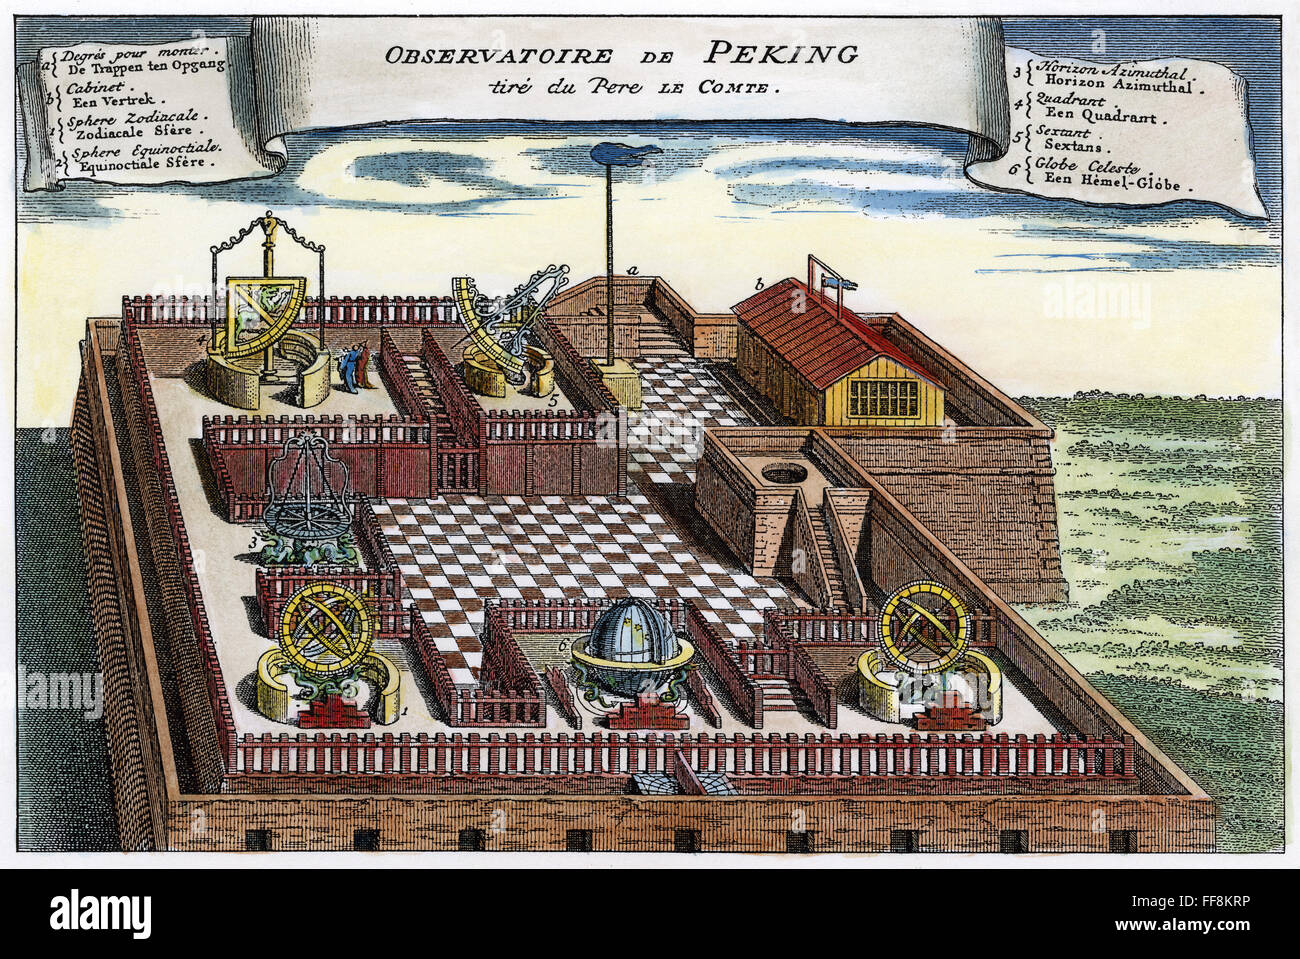 ASTRONOMISCHES OBSERVATORIUM. /nObservatory in Peking, China. Französisch, Gravur, 1747, nach einem Stich von Le Comte "Voyage au Chine," 1698. Stockfoto